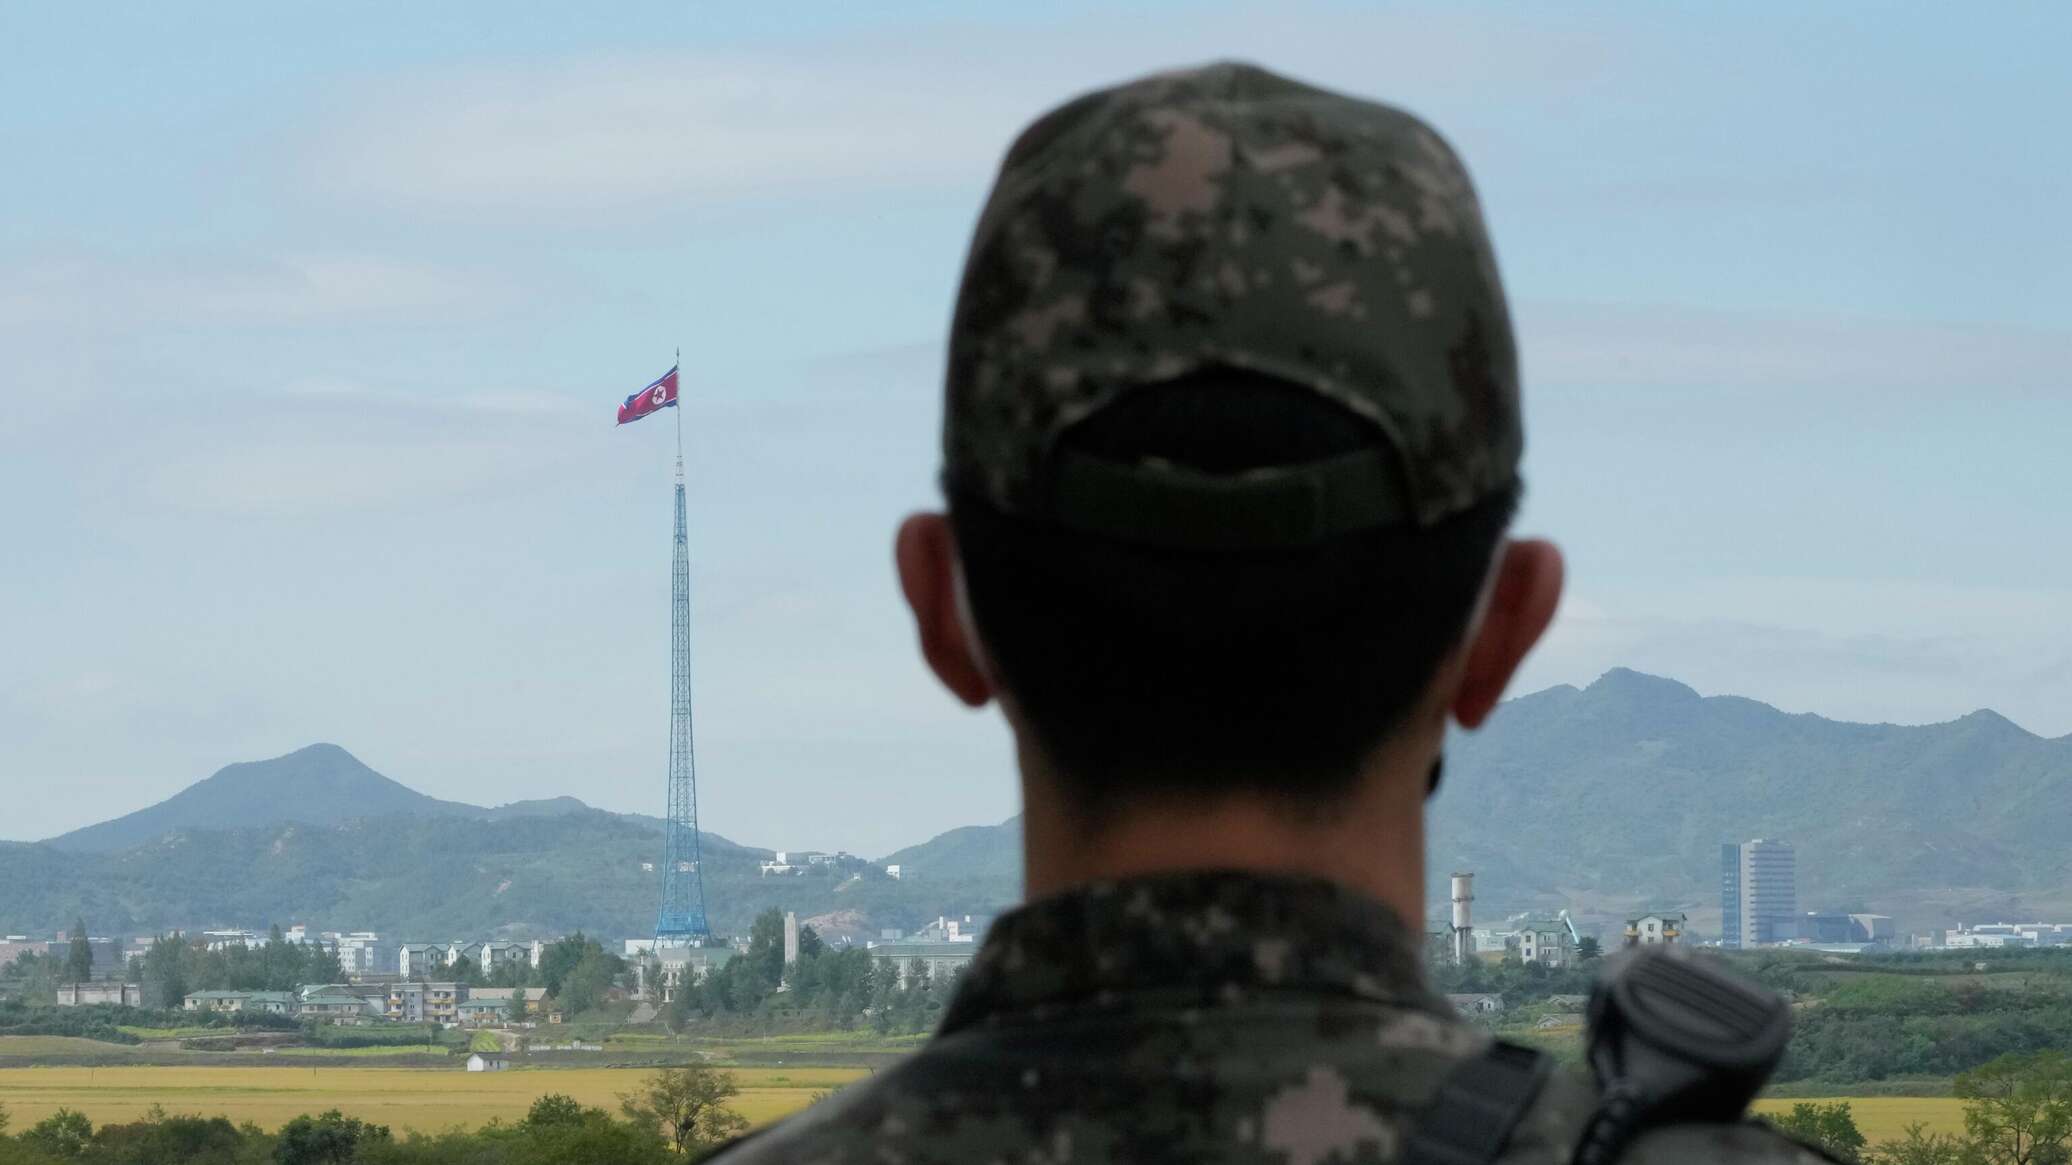 كوريا الشمالية: الصدام الفعلي والحرب في شبه الجزيرة الكورية أصبح "مسألة وقت" وليس احتمال